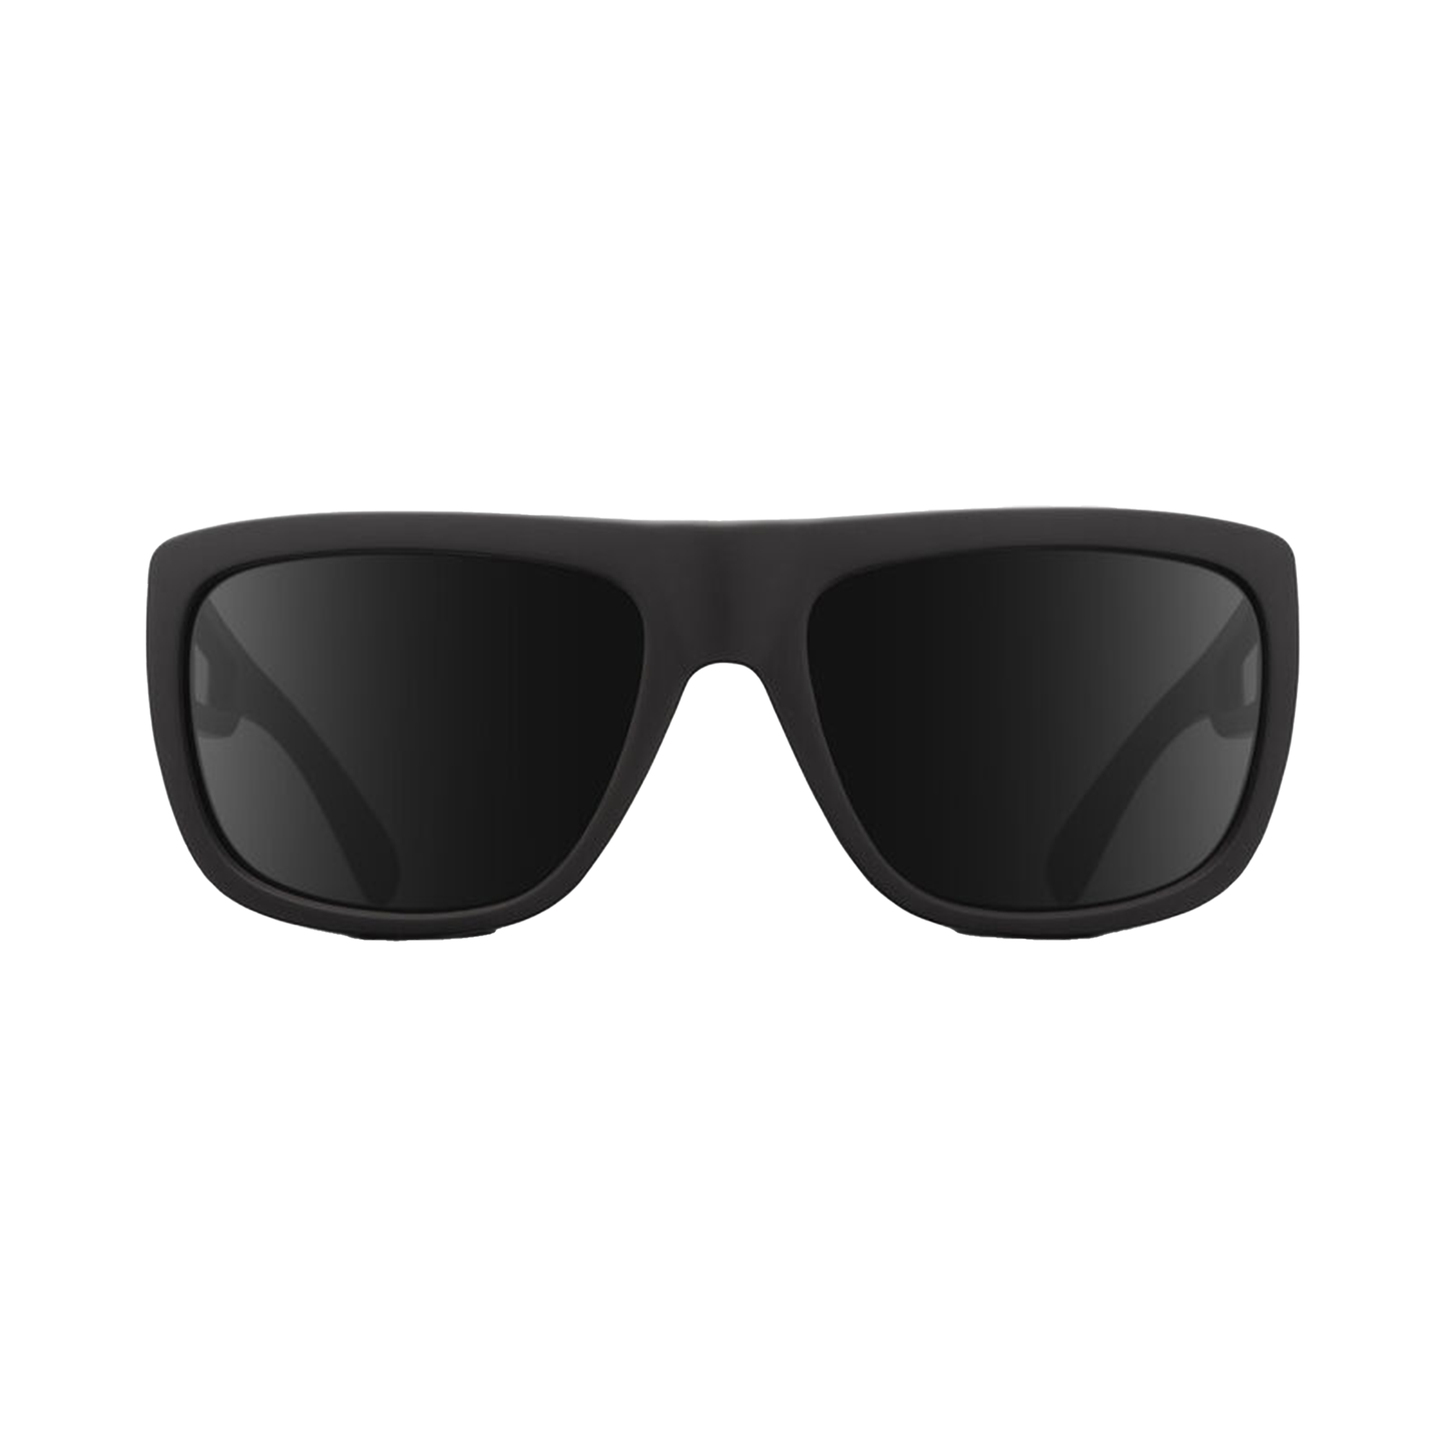 Giro Wilson Sunglasses Matte Black Sunglasses